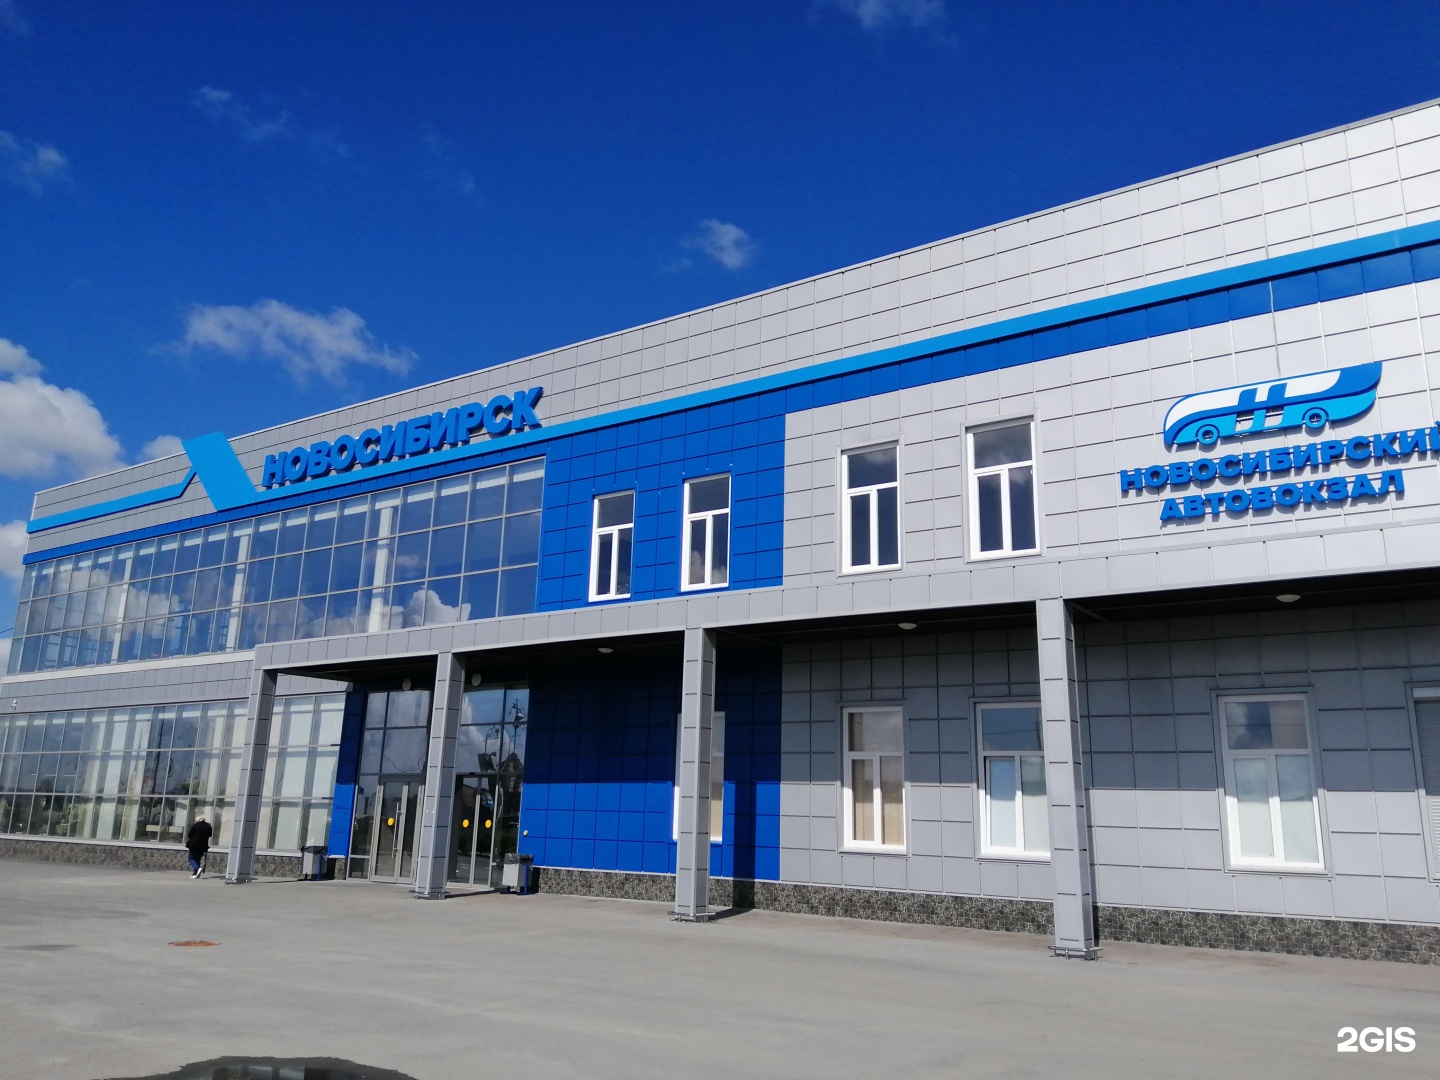 Автовокзал Новосибирск Купить Билеты Онлайн Официальный